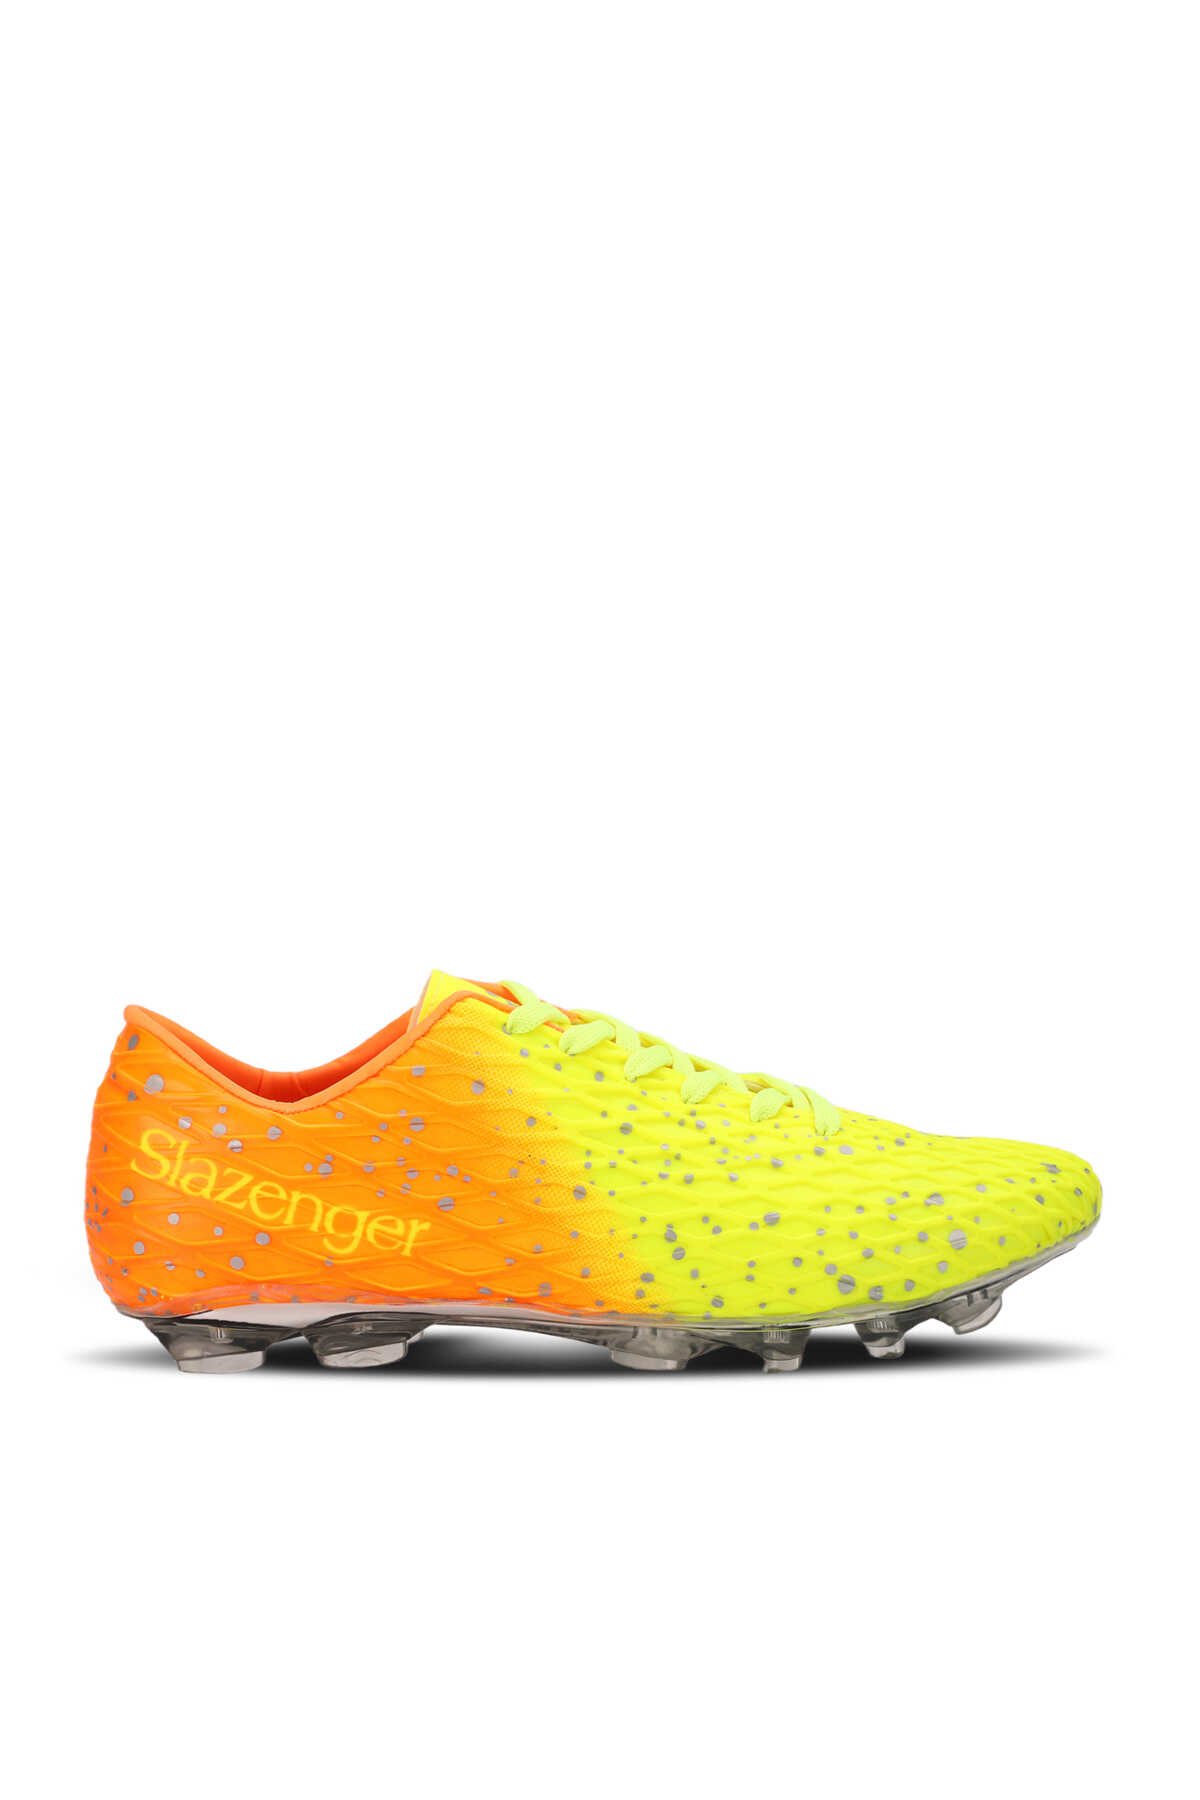 Slazenger - Slazenger HANIA KRP Futbol Erkek Çocuk Krampon Ayakkabı Neon Sarı